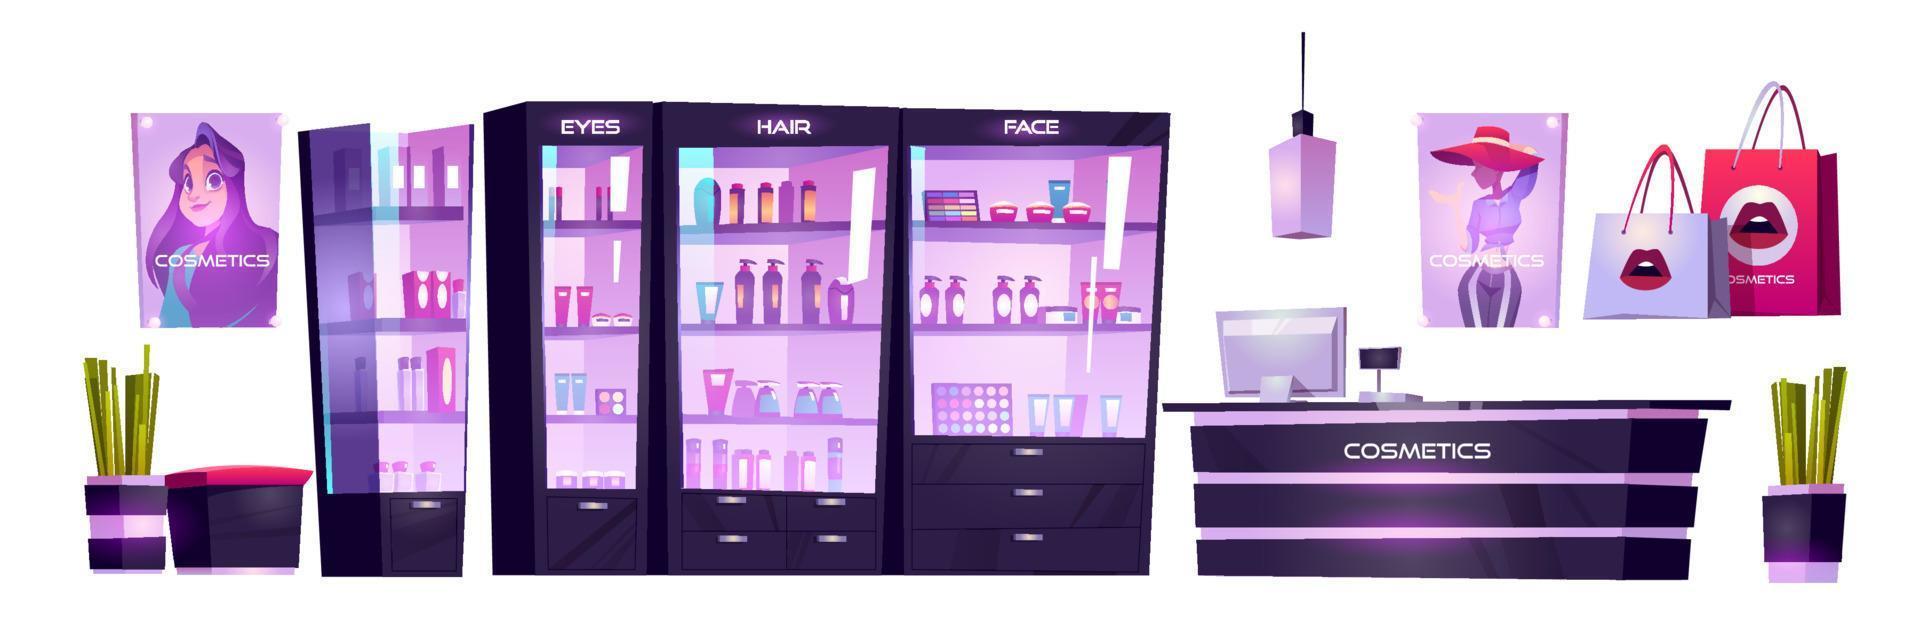 loja de cosméticos com produtos para maquiagem, cuidados com a pele vetor